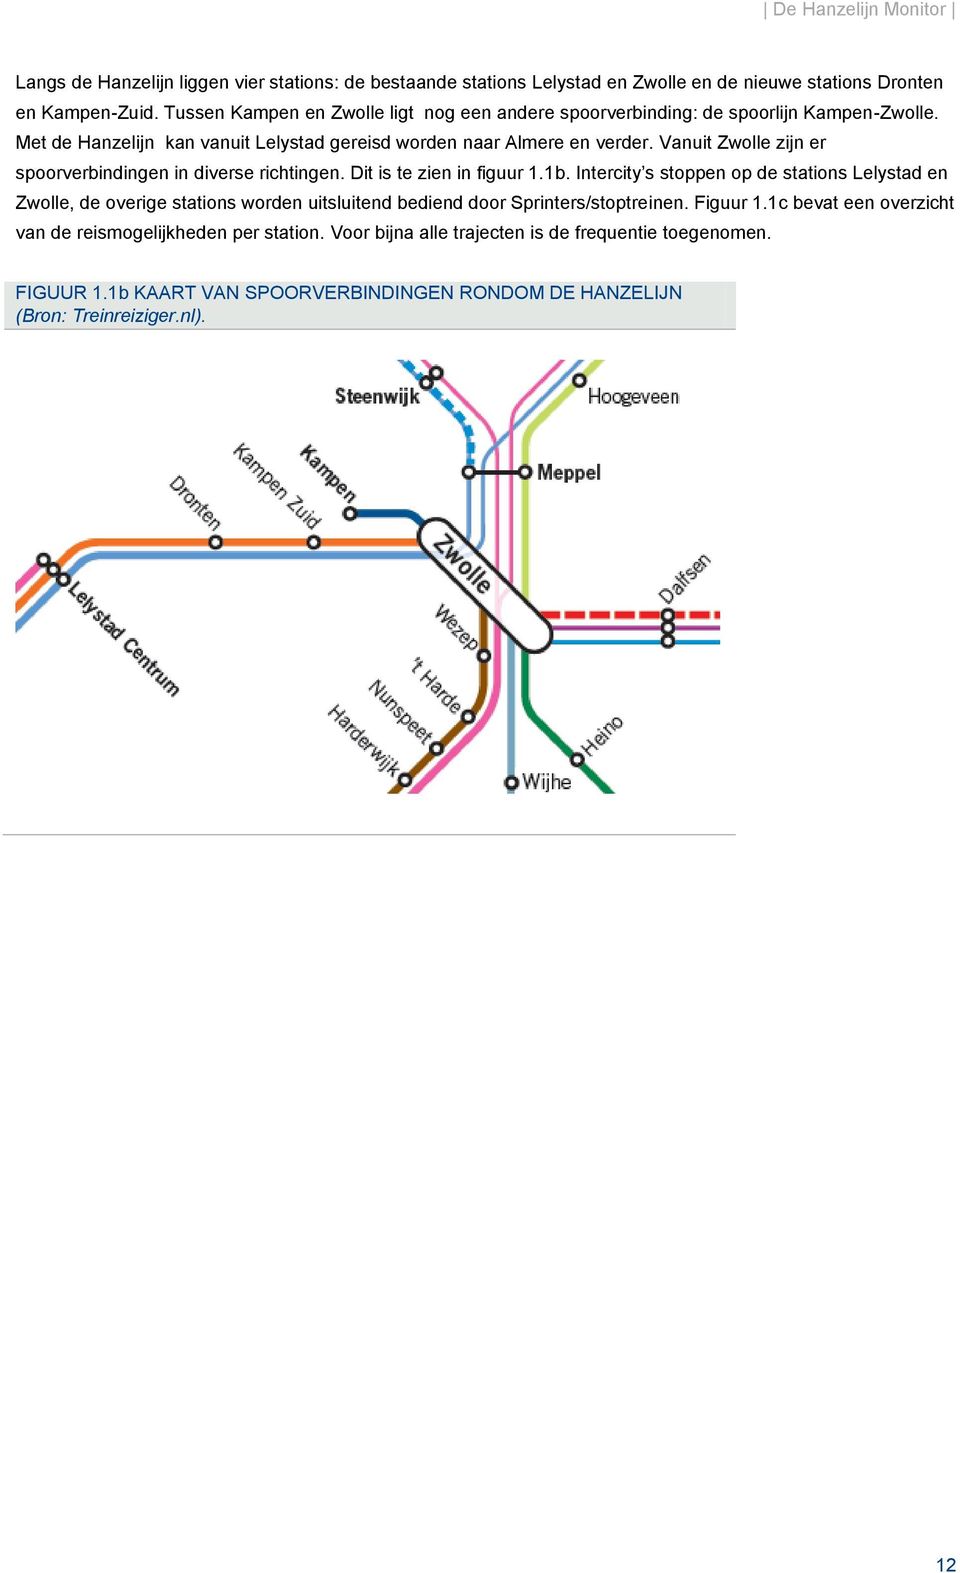 Vanuit Zwolle zijn er spoorverbindingen in diverse richtingen. Dit is te zien in figuur 1.1b.